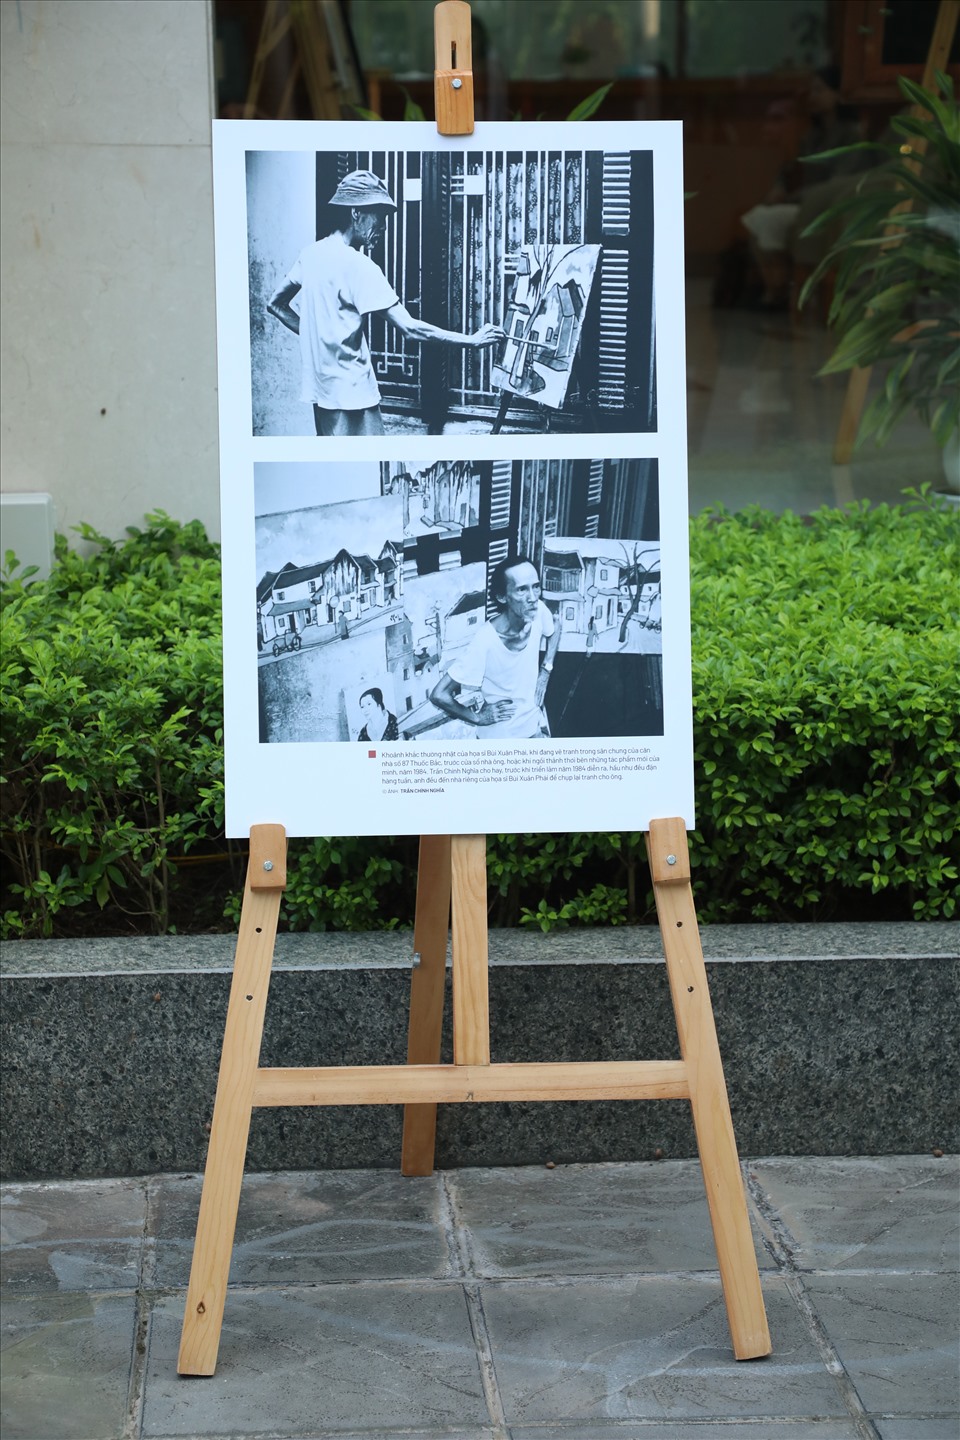 Nhiếp ảnh gia Trần Chính Nghĩa đã tuyển chọn 20 bức ảnh chân dung Bùi Xuân Phái trong kho ảnh của mình để giới thiệu và trưng bày trong khuôn khổ Lễ trao giải.